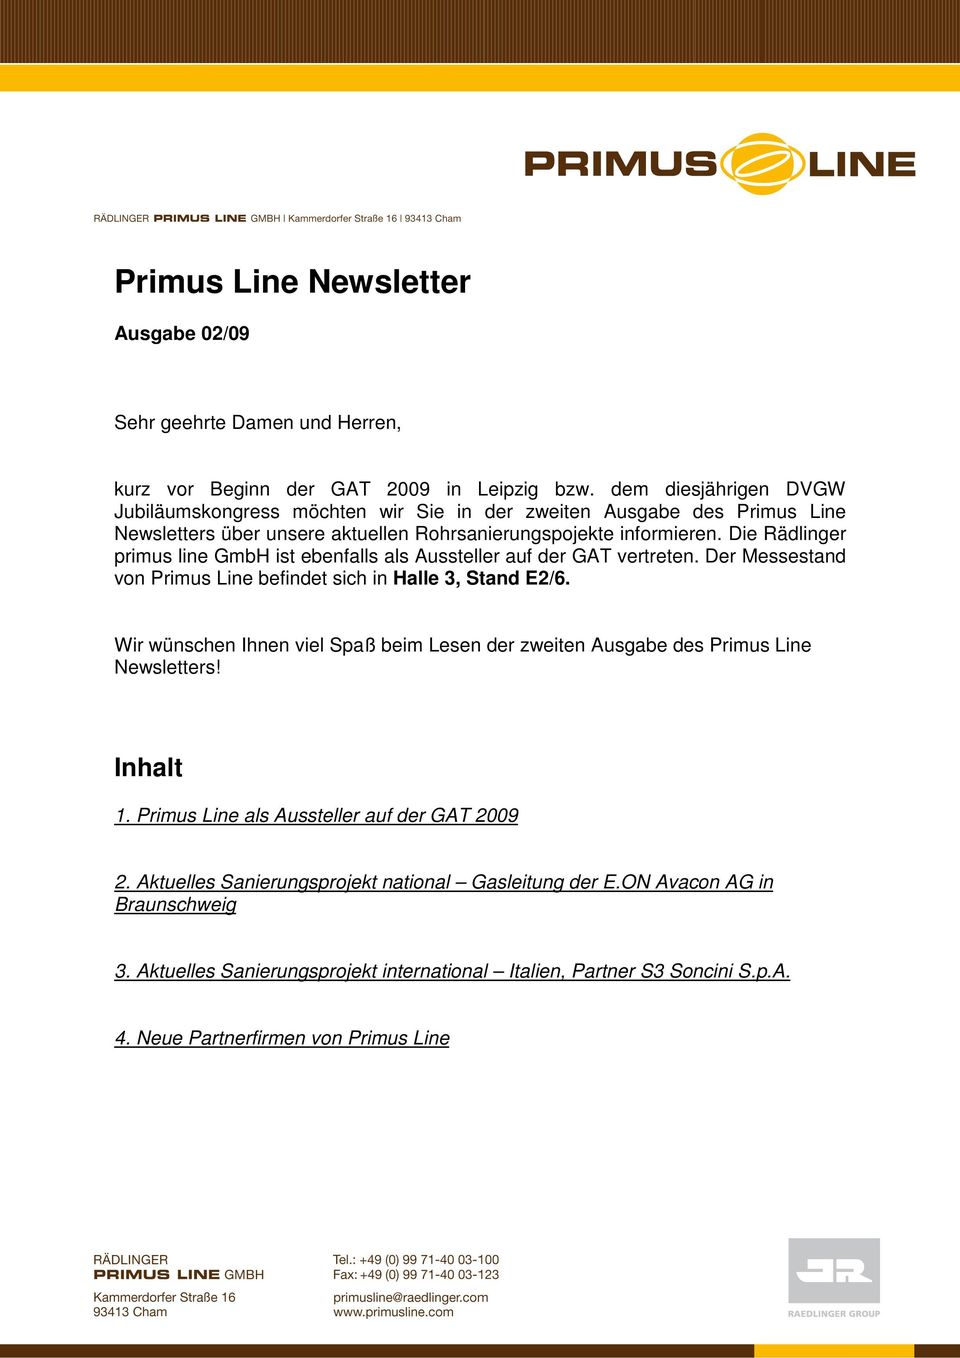 Die Rädlinger primus line GmbH ist ebenfalls als Aussteller auf der GAT vertreten. Der Messestand von Primus Line befindet sich in Halle 3, Stand E2/6.